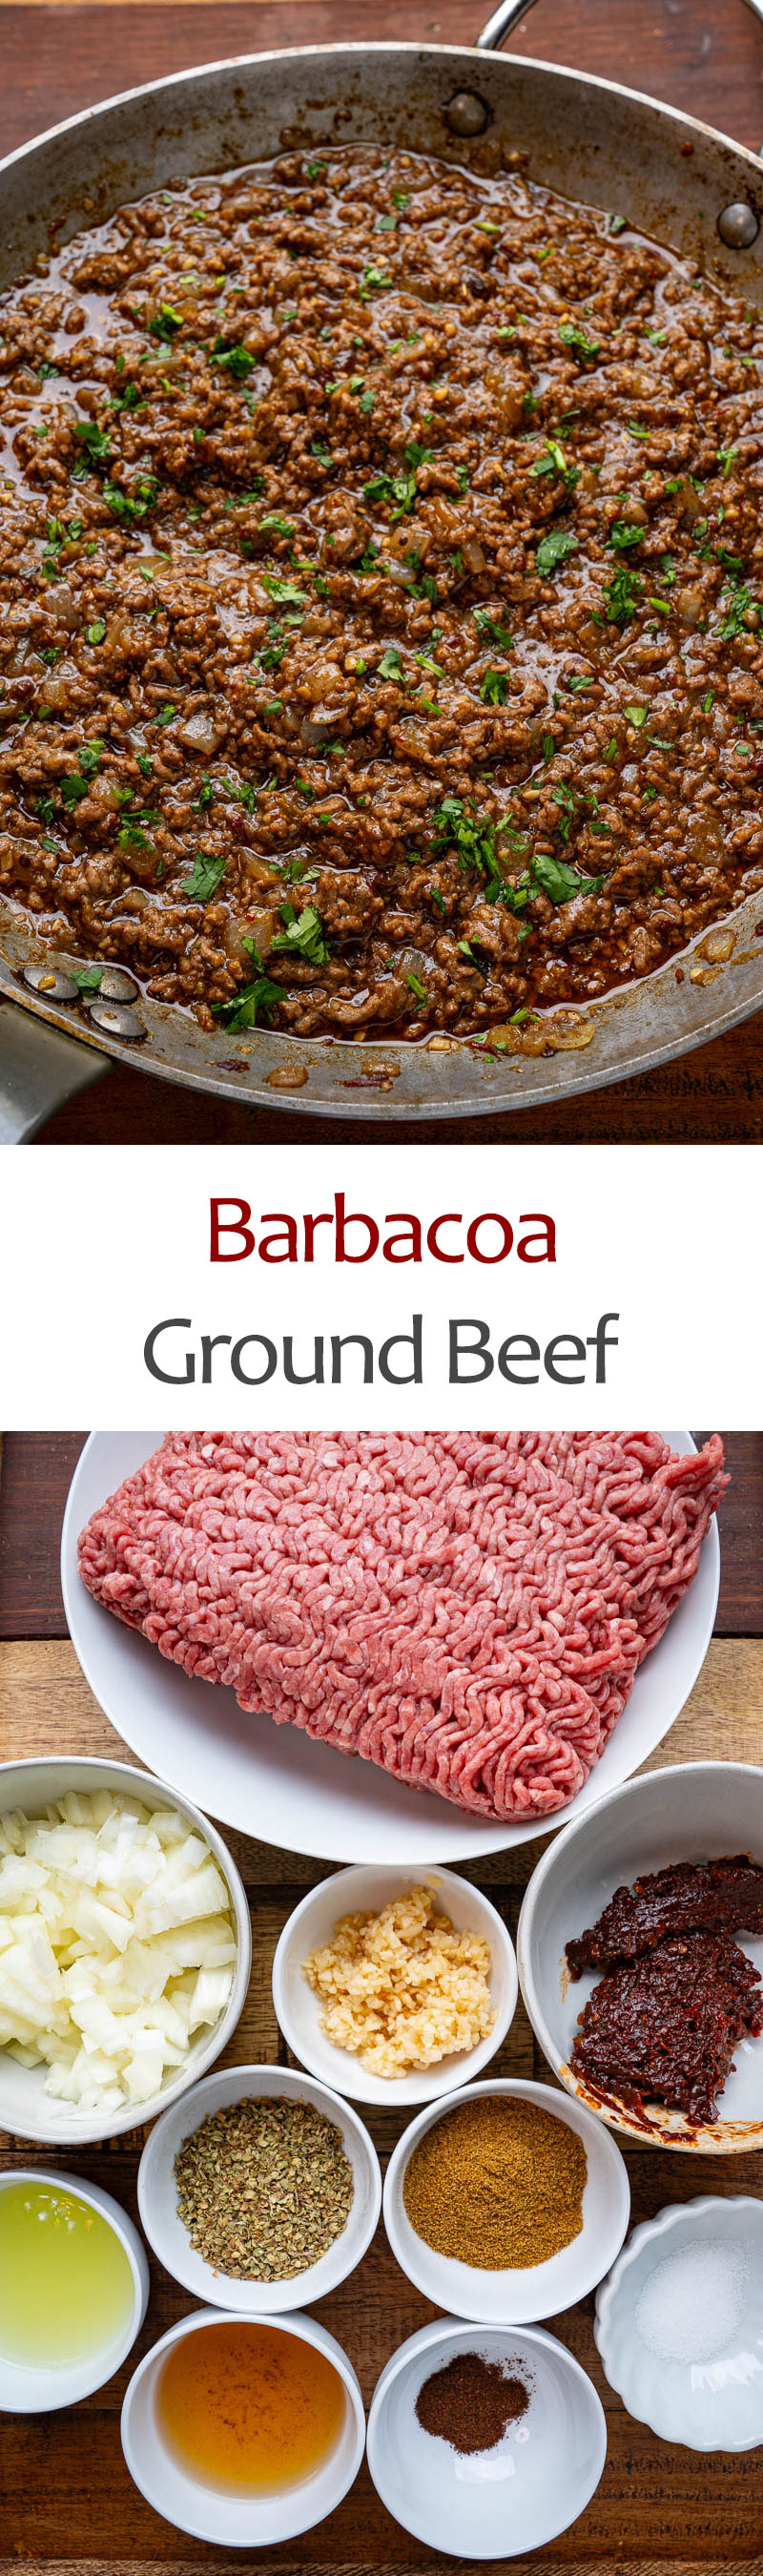 Barbacoa Ground Beef